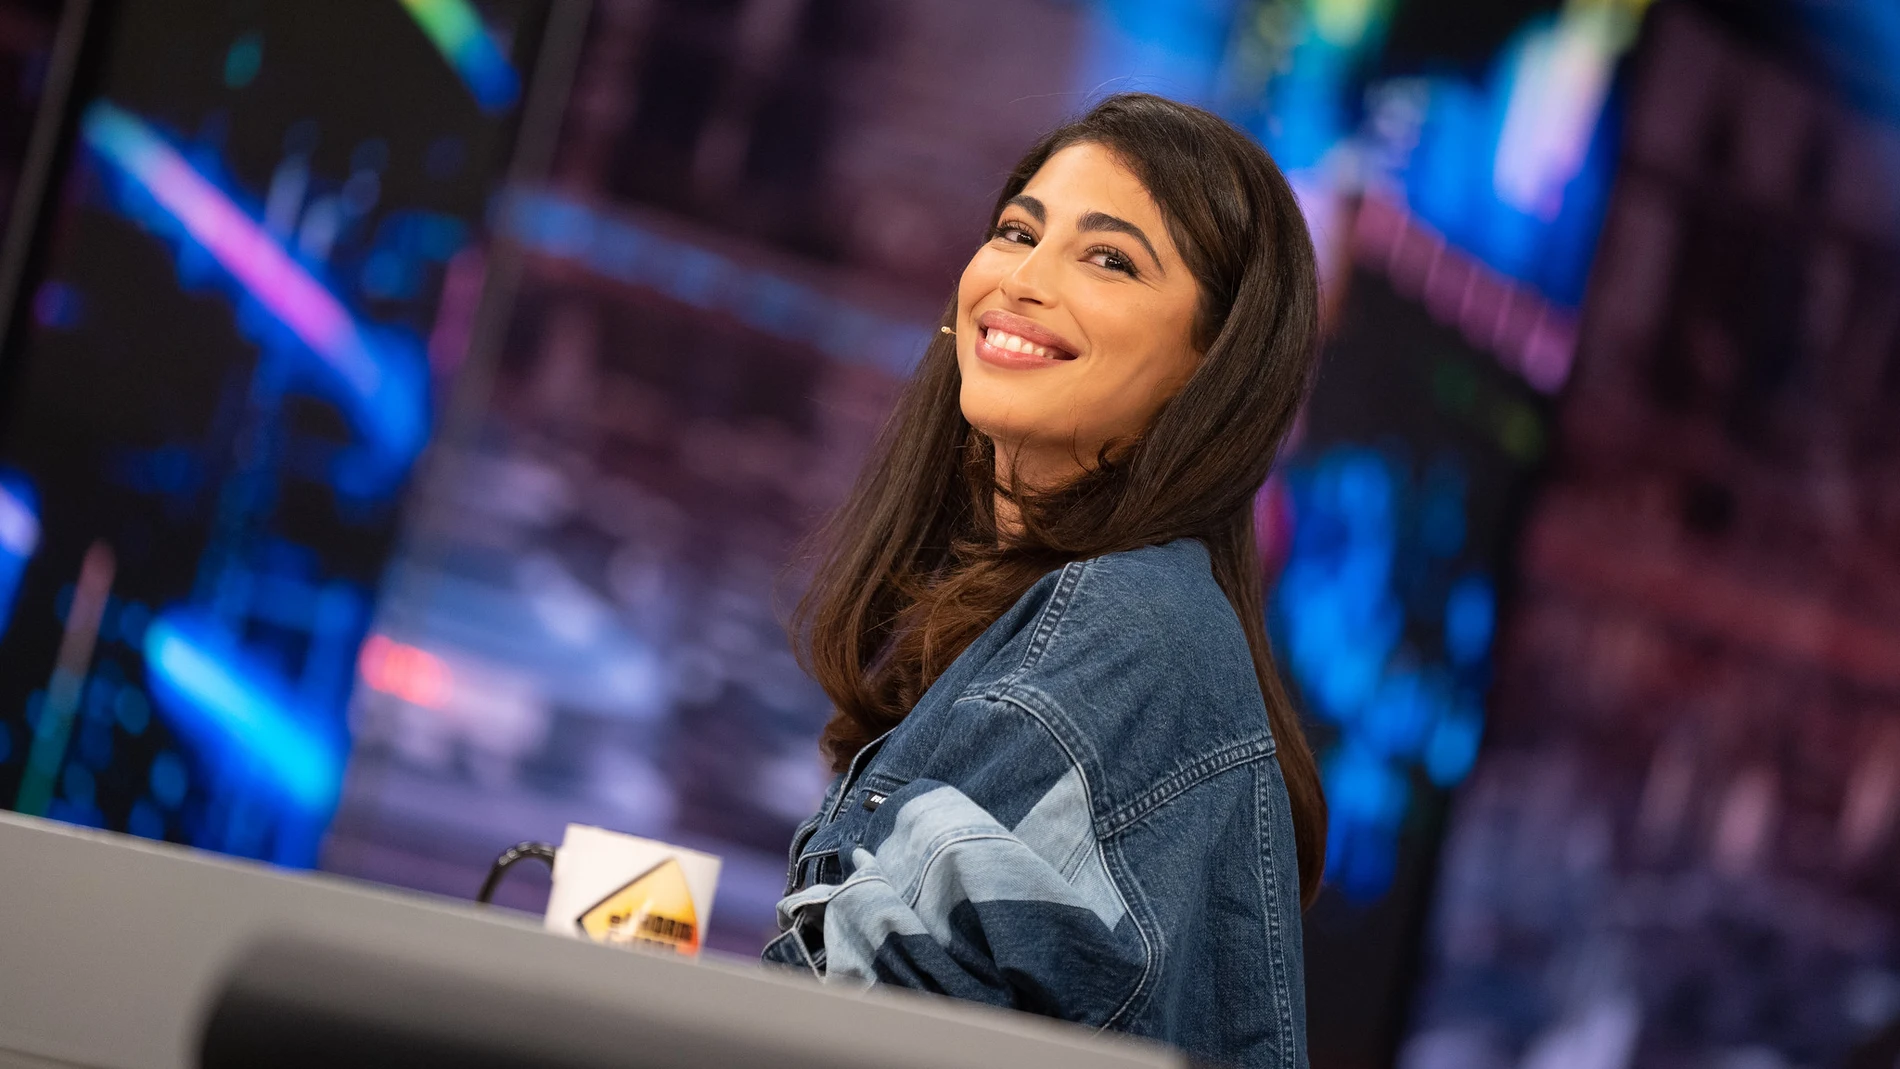 Mina El Hammani explica el motivo por el que no participó en 'Ana y los 7': "No llegué a hacer el casting"